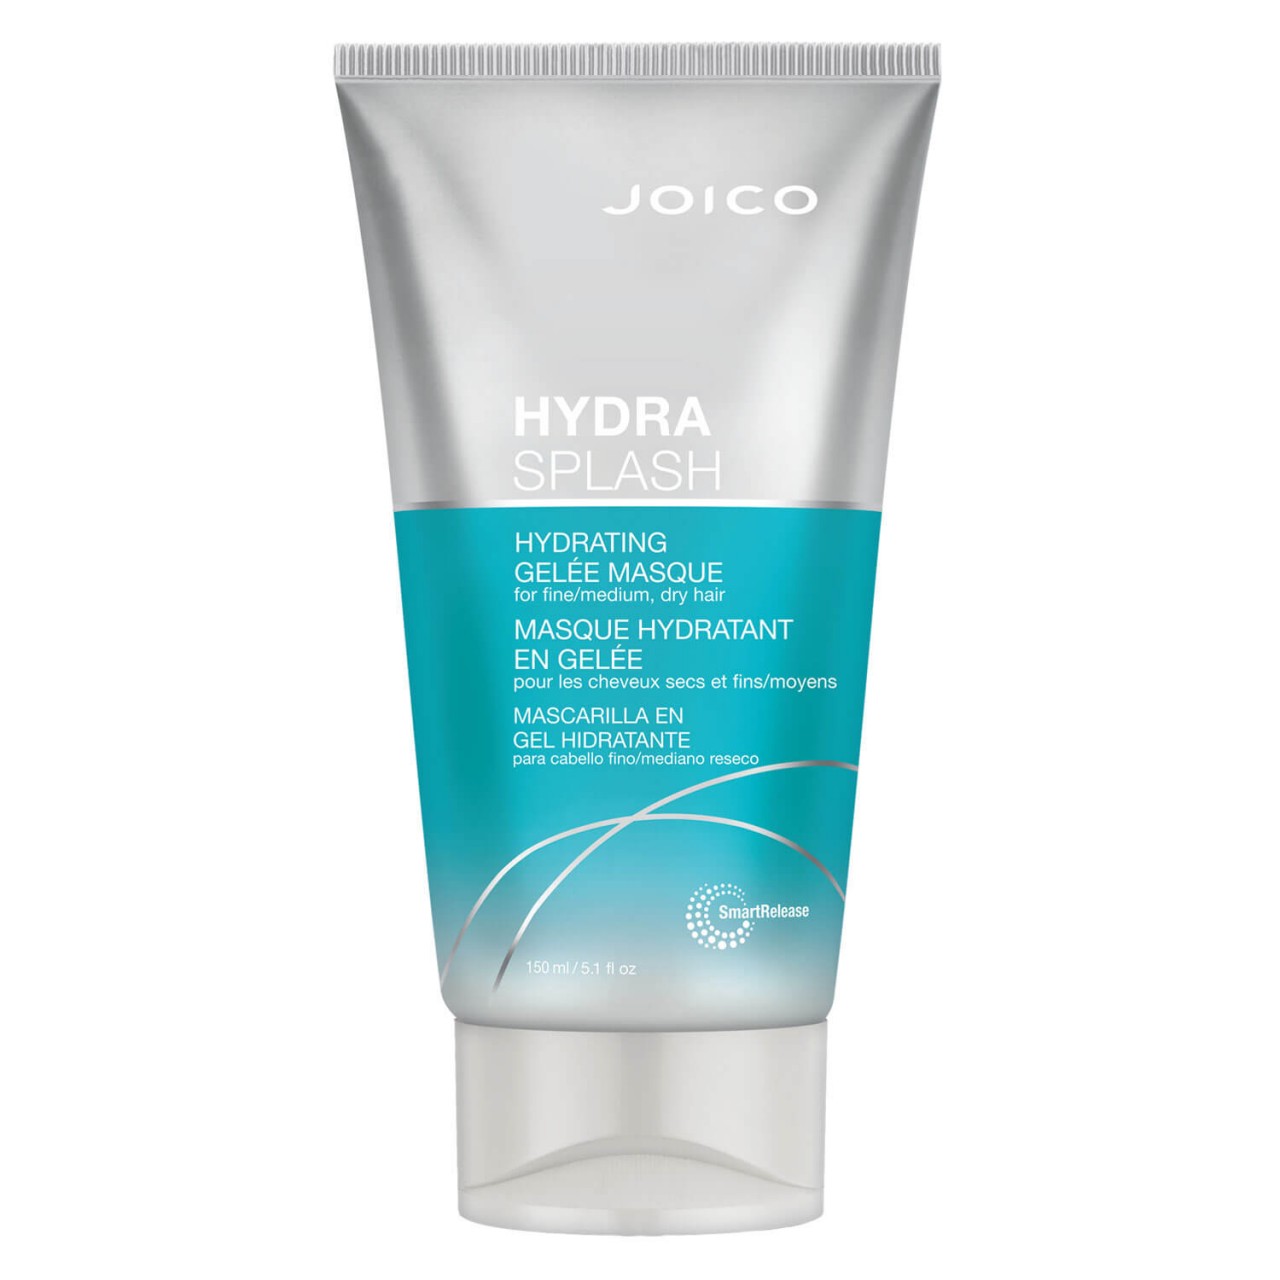 Hydra Splash - Hydrating Gelée Masque von Joico